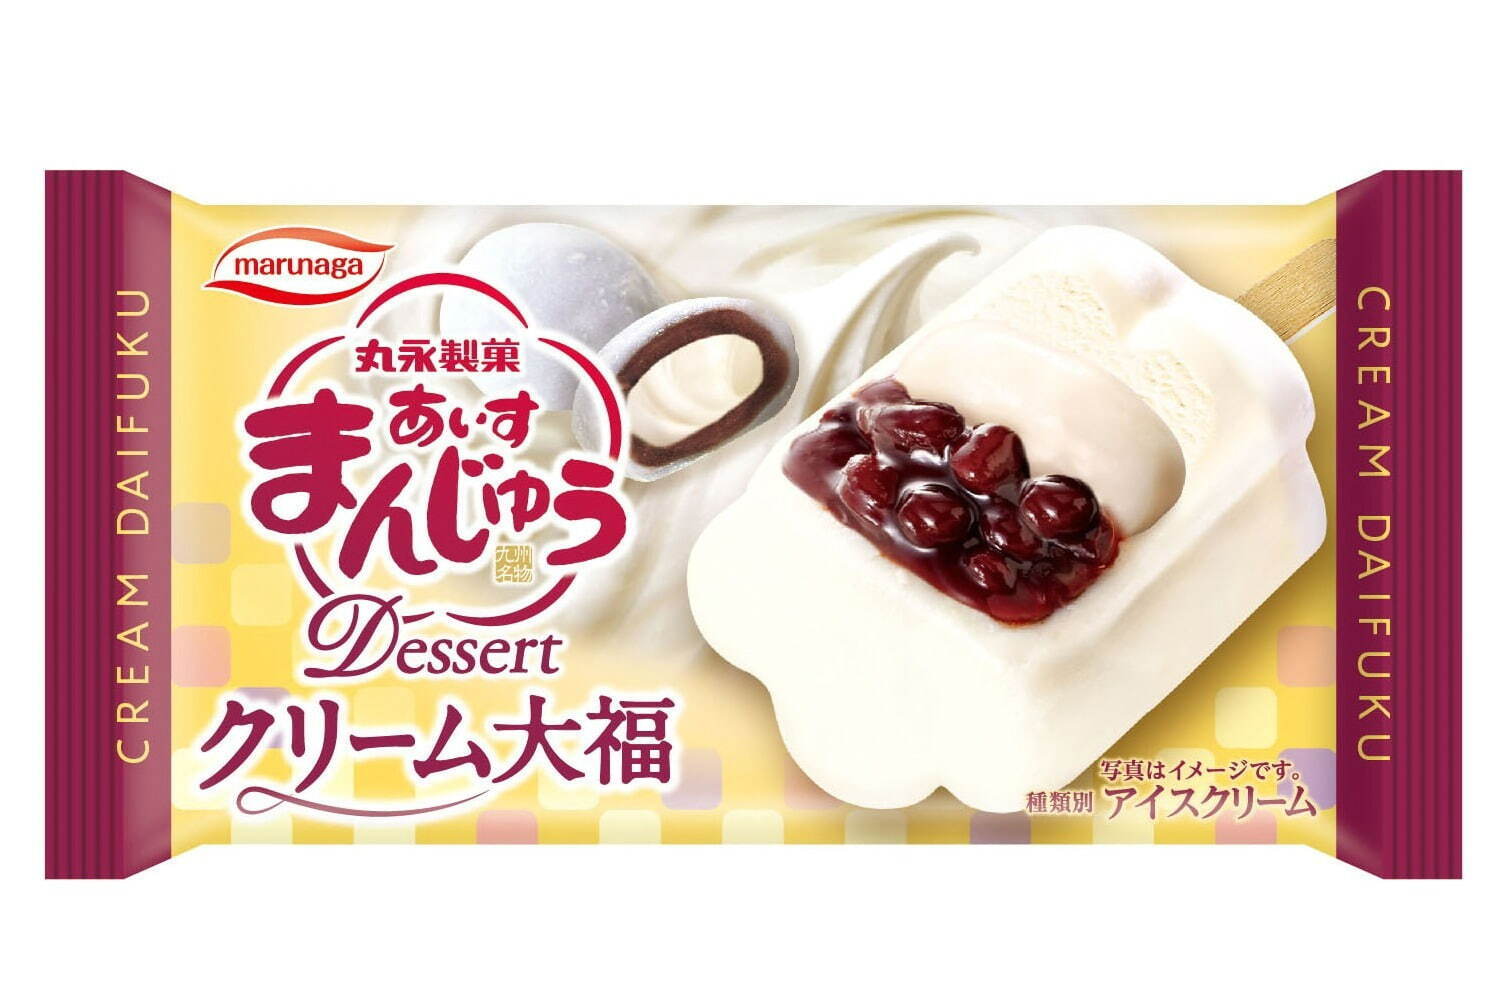 「あいすまんじゅう Dessert クリーム大福」 194円